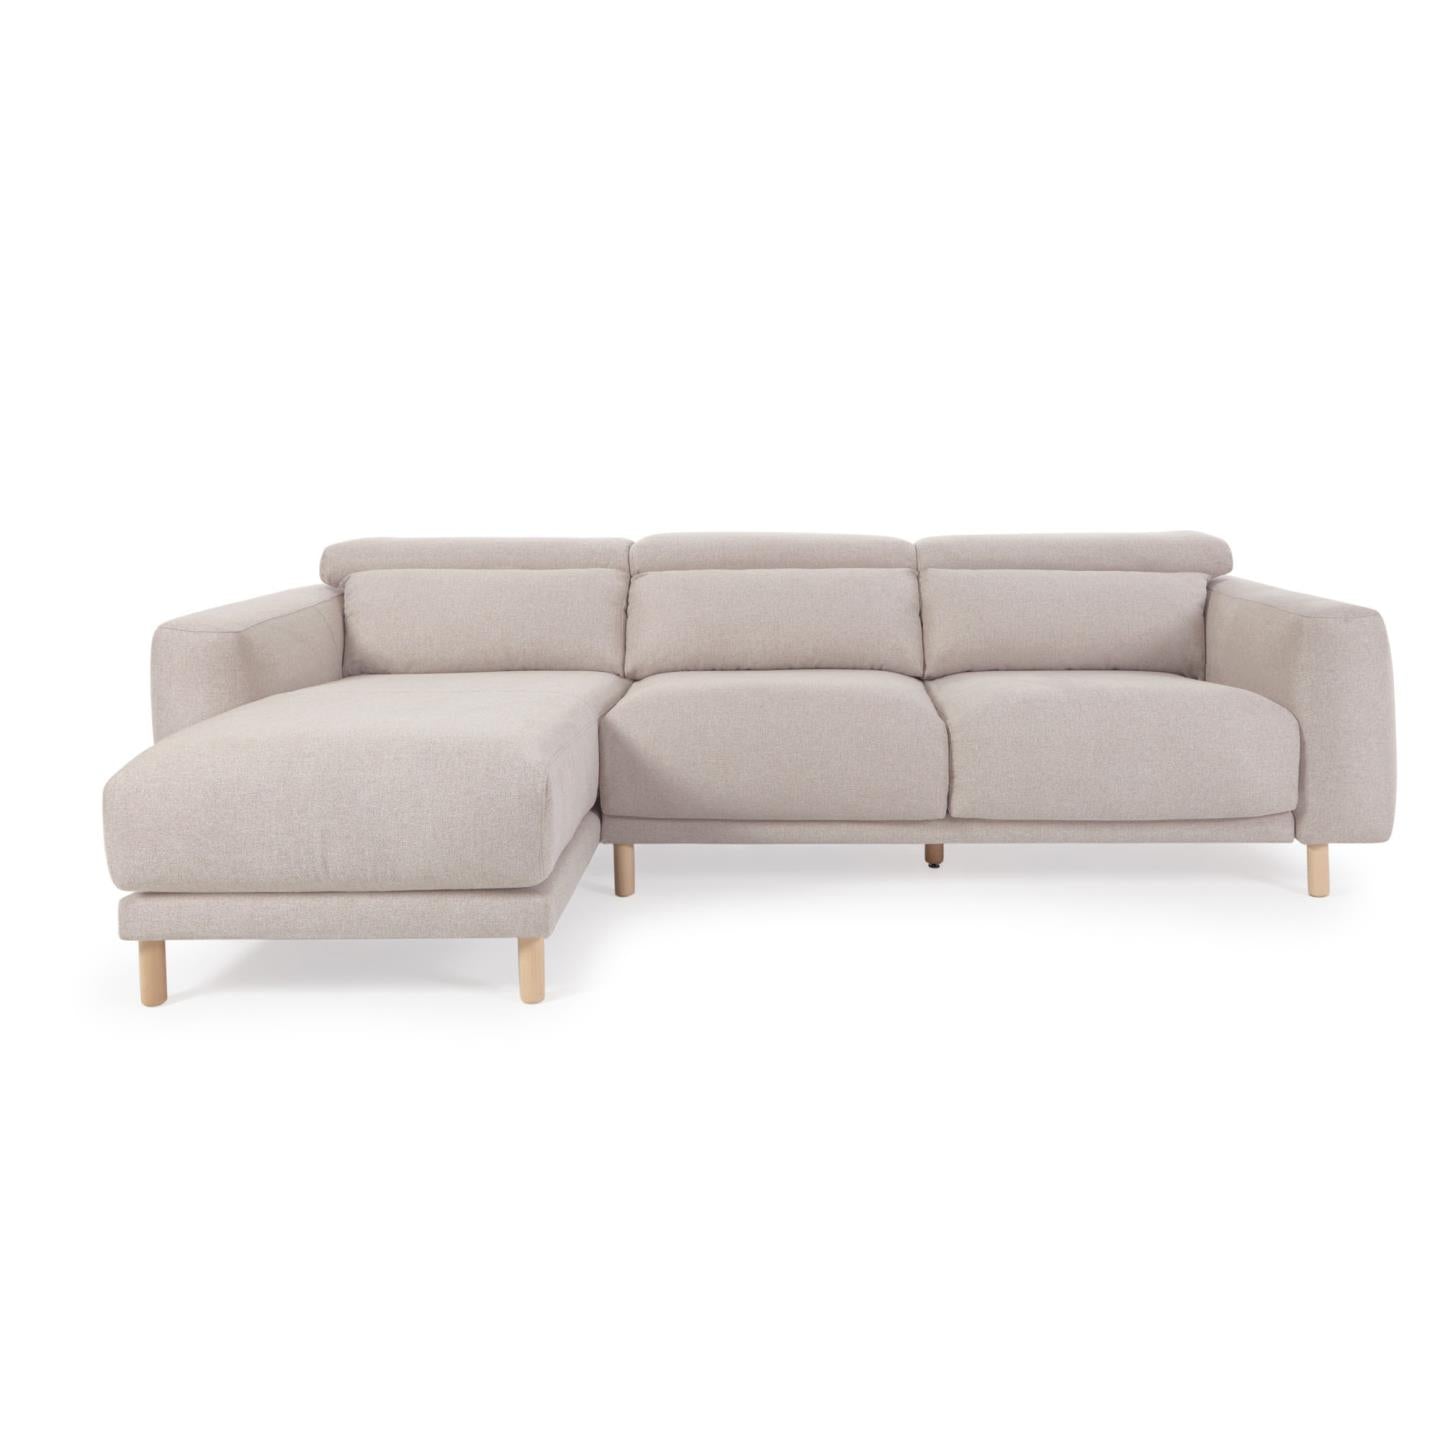 Singa 3 személyes kanapé bal oldali fekvőfotellel, bézs színben, 296 cm